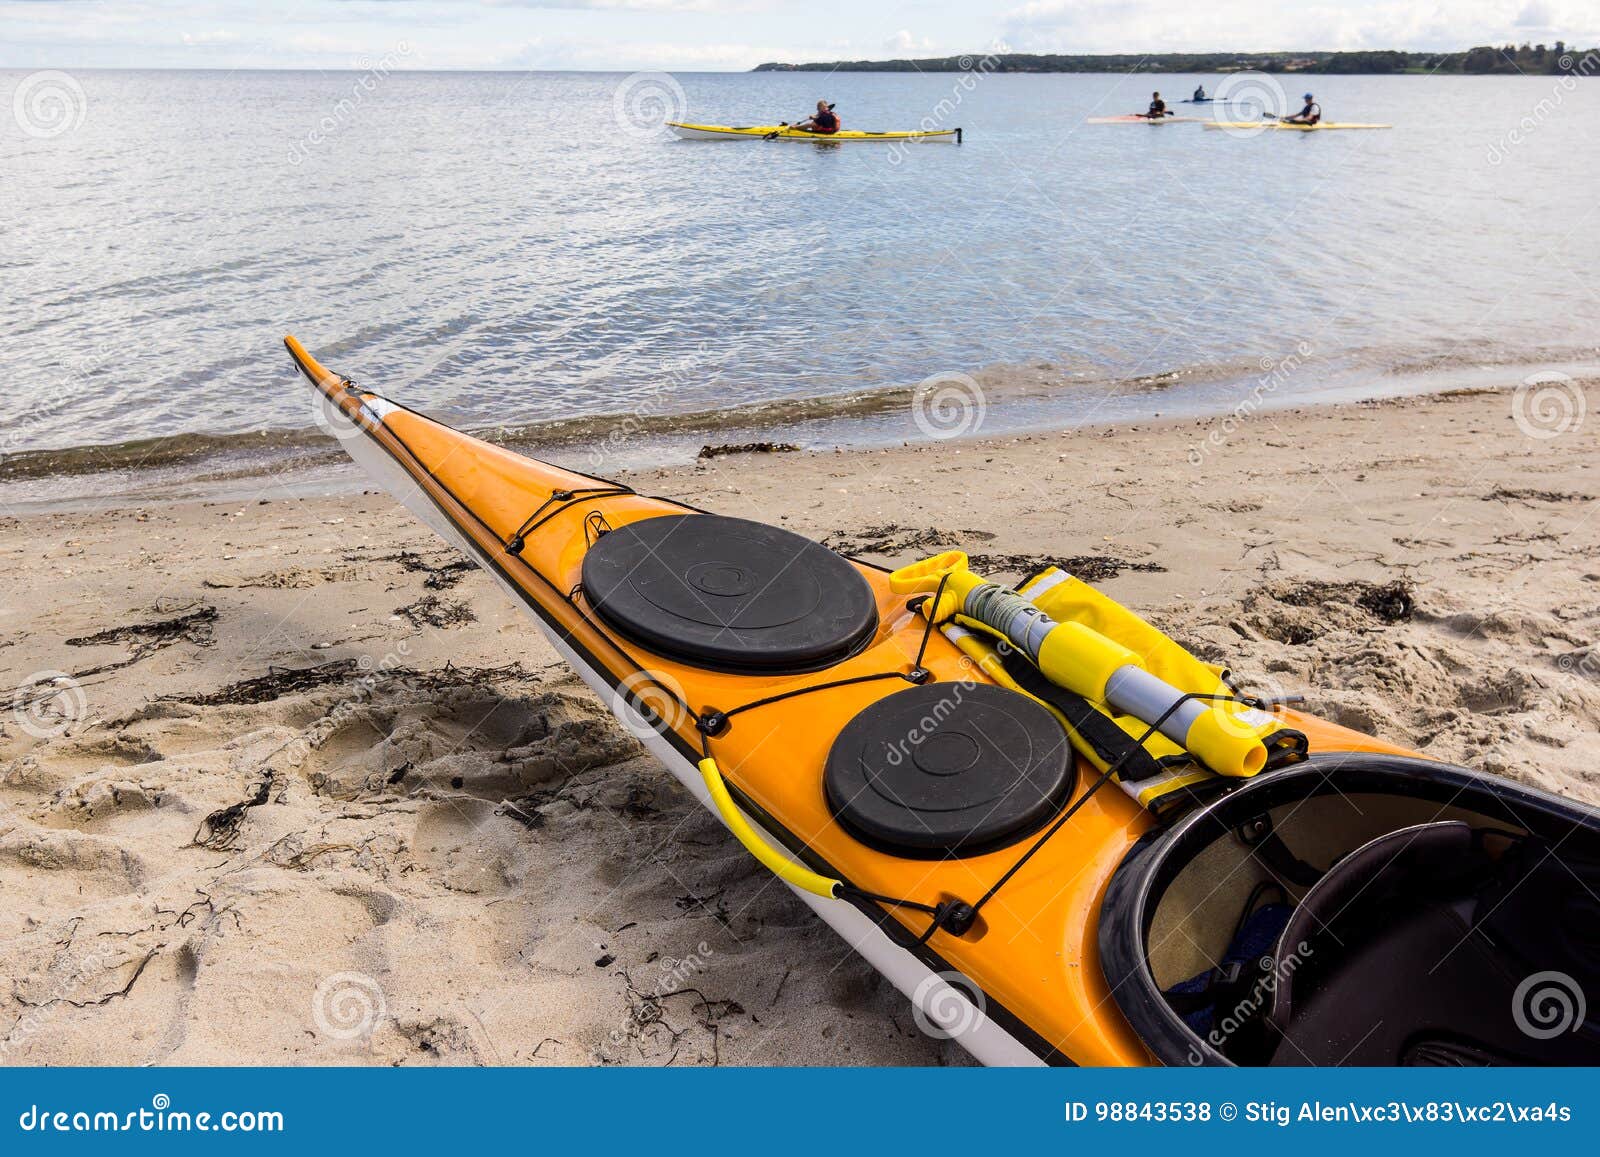 Een gele overzeese kajak op het zand en vier die langs de kust kayaking. Een gele kajak op het strand en vier die langs de kust, Holl, Denemarken, 27 Augustus, 2017 kayaking